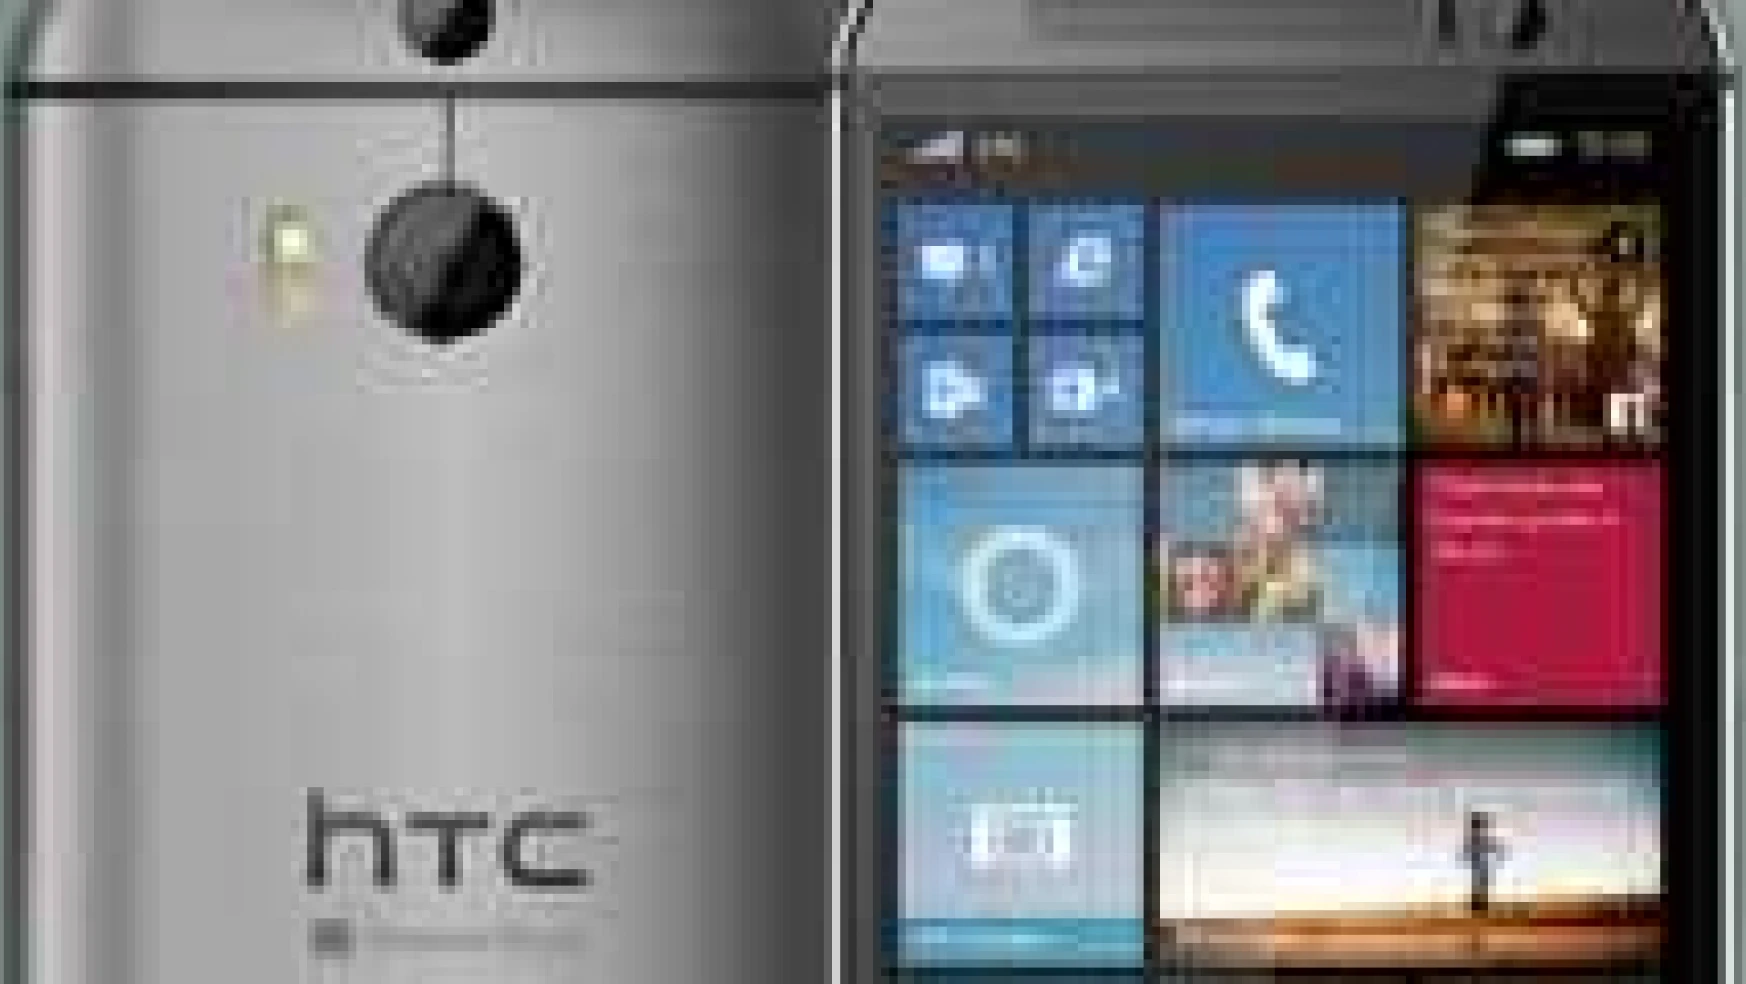 HTC'den selfie telefonu: HTC Desire 820